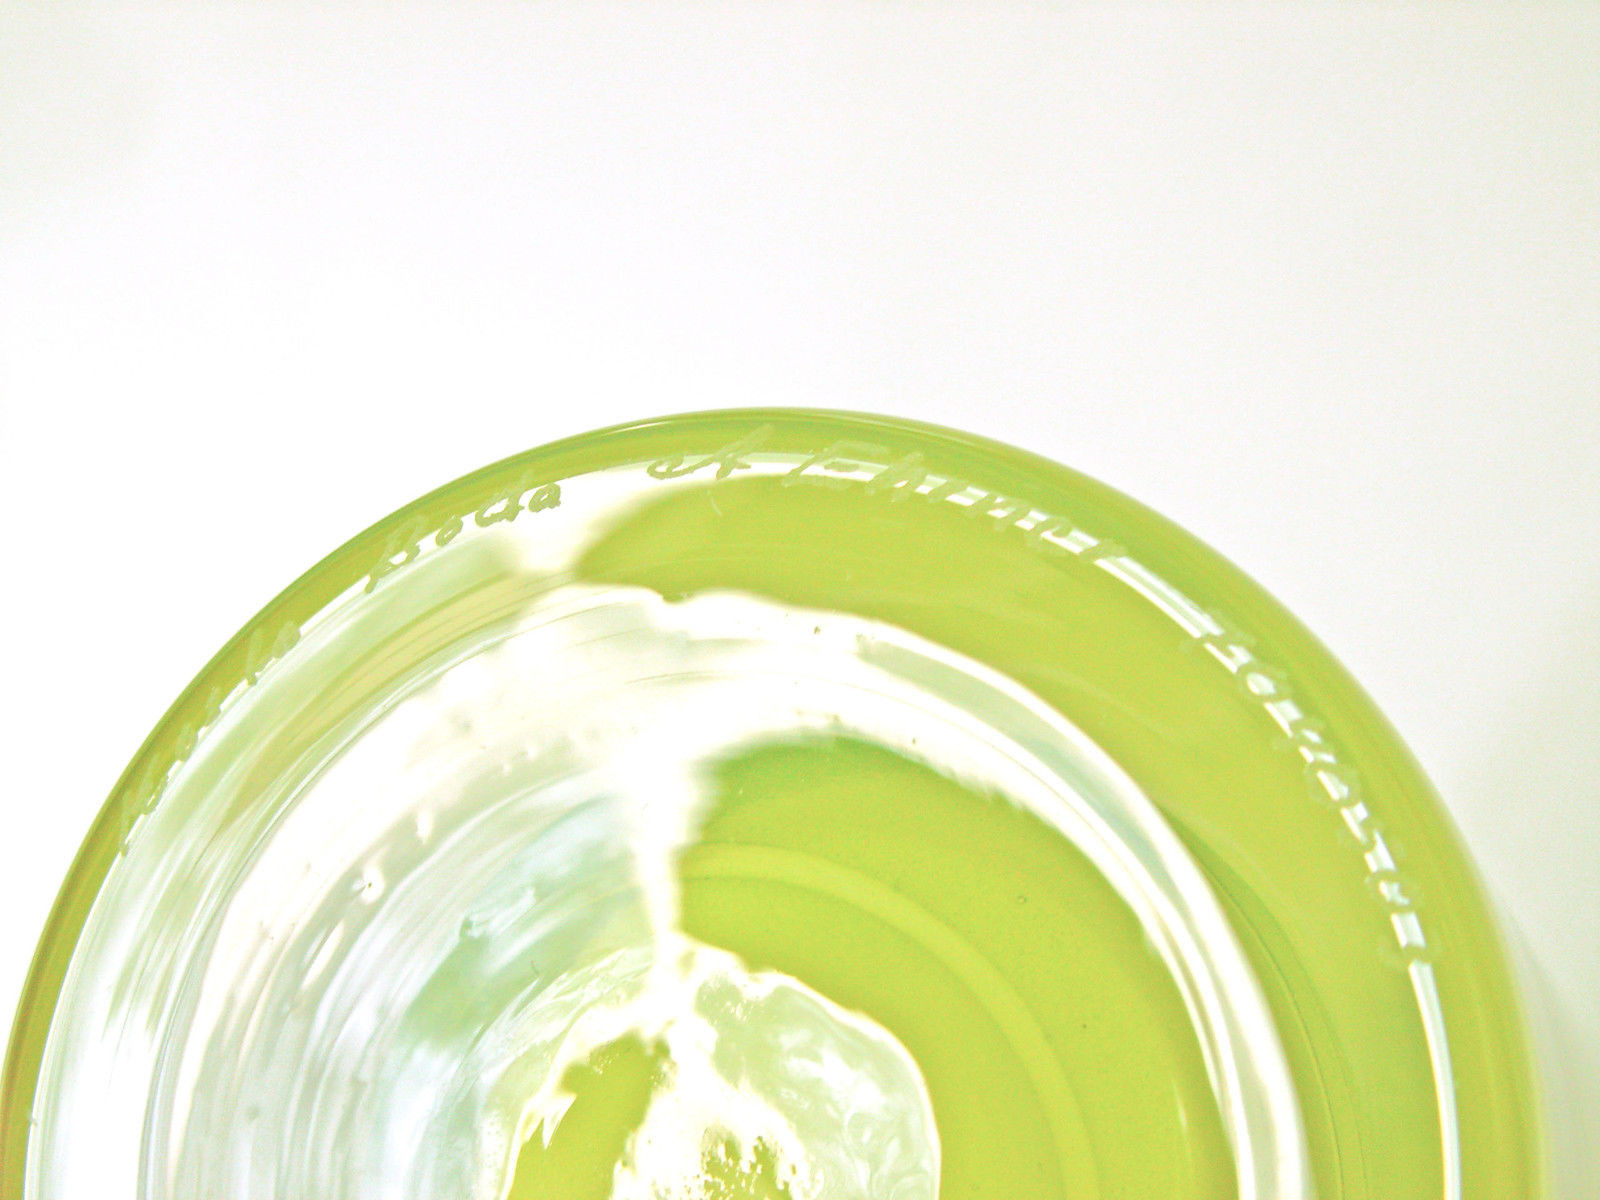 22 Famous Kosta Boda Glass Vase 2022 free download kosta boda glass vase of kosta boda swedish crystal anna ehrner samoa vase lime ebay with s l1600